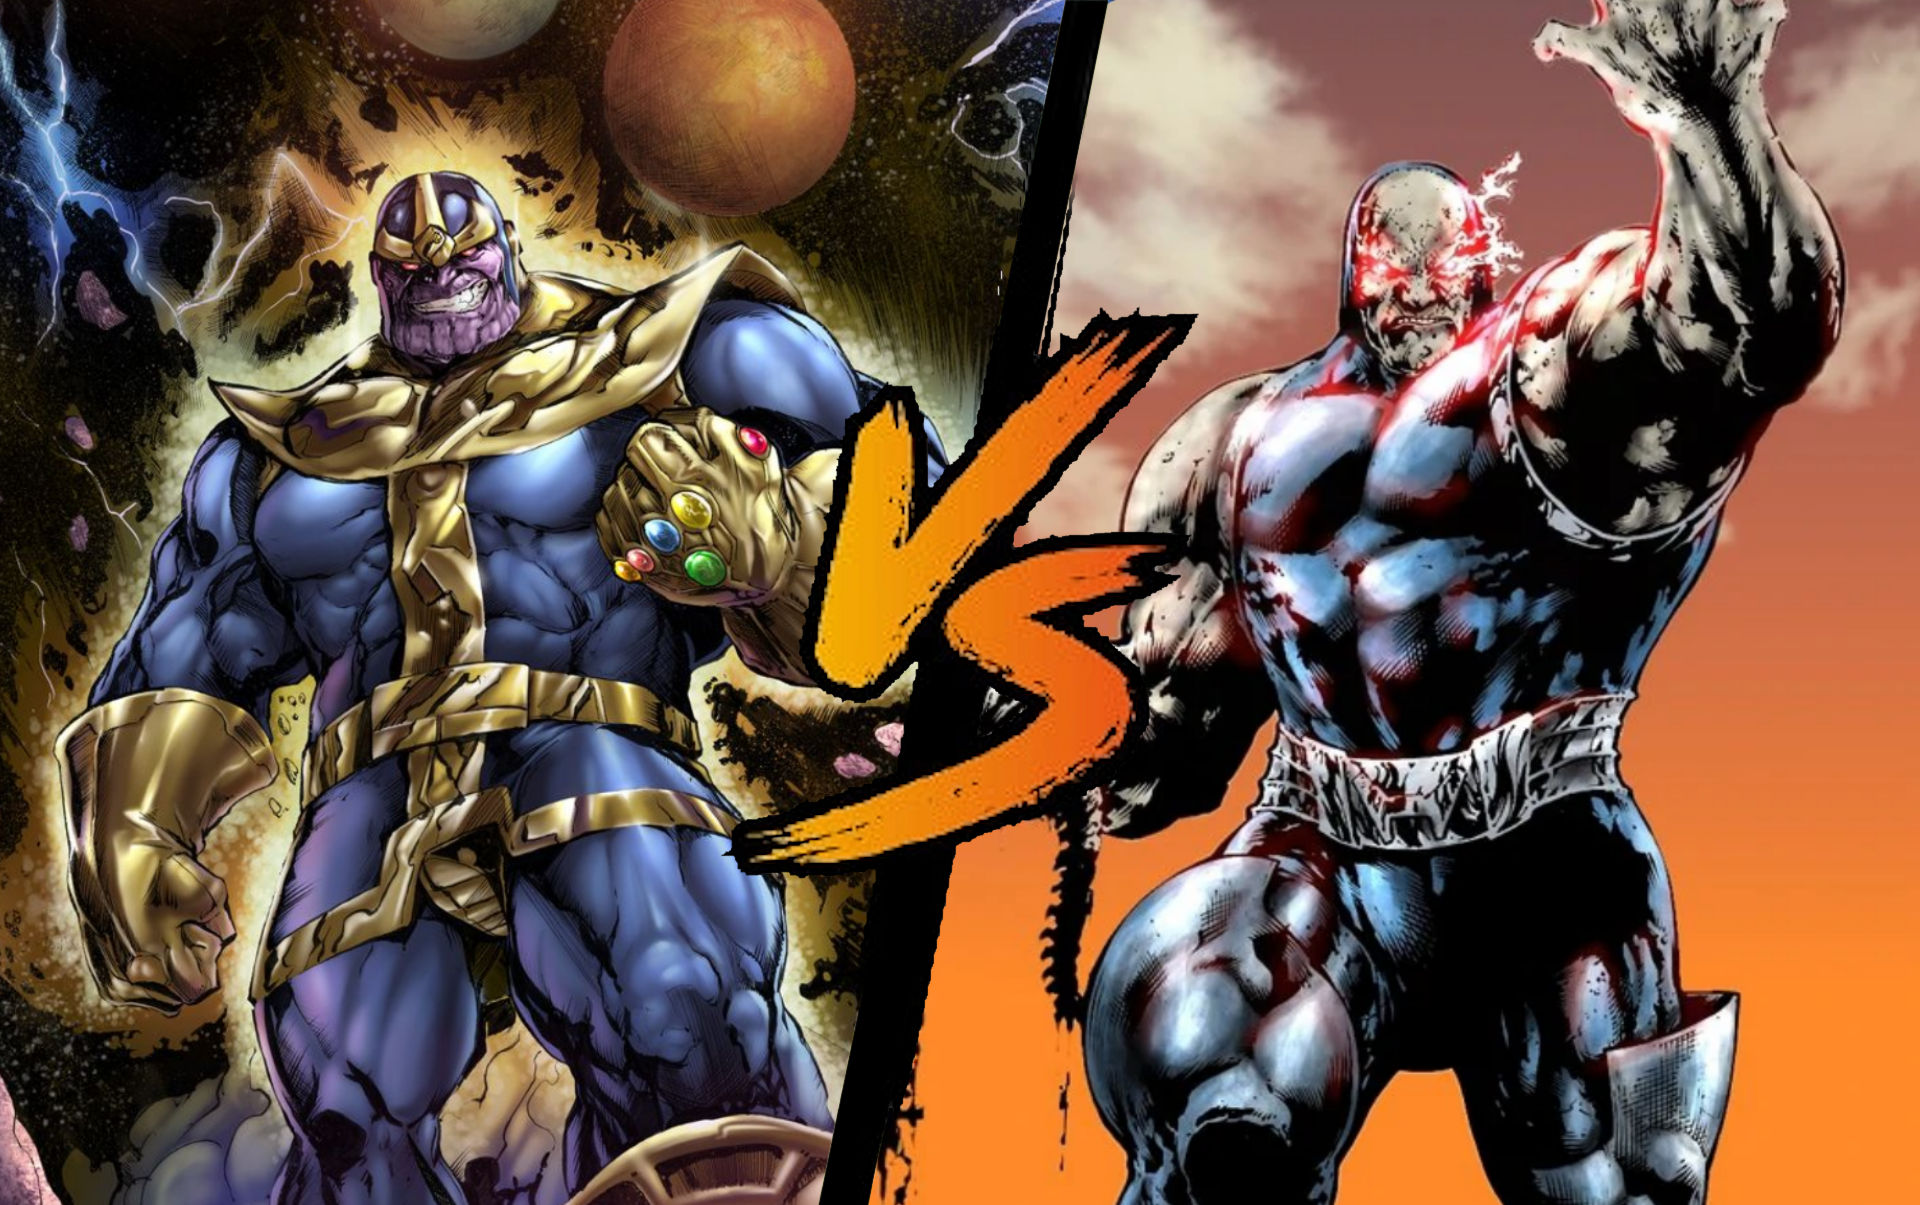 Thanos (Marvel) vs Darkseid (DC Comics)